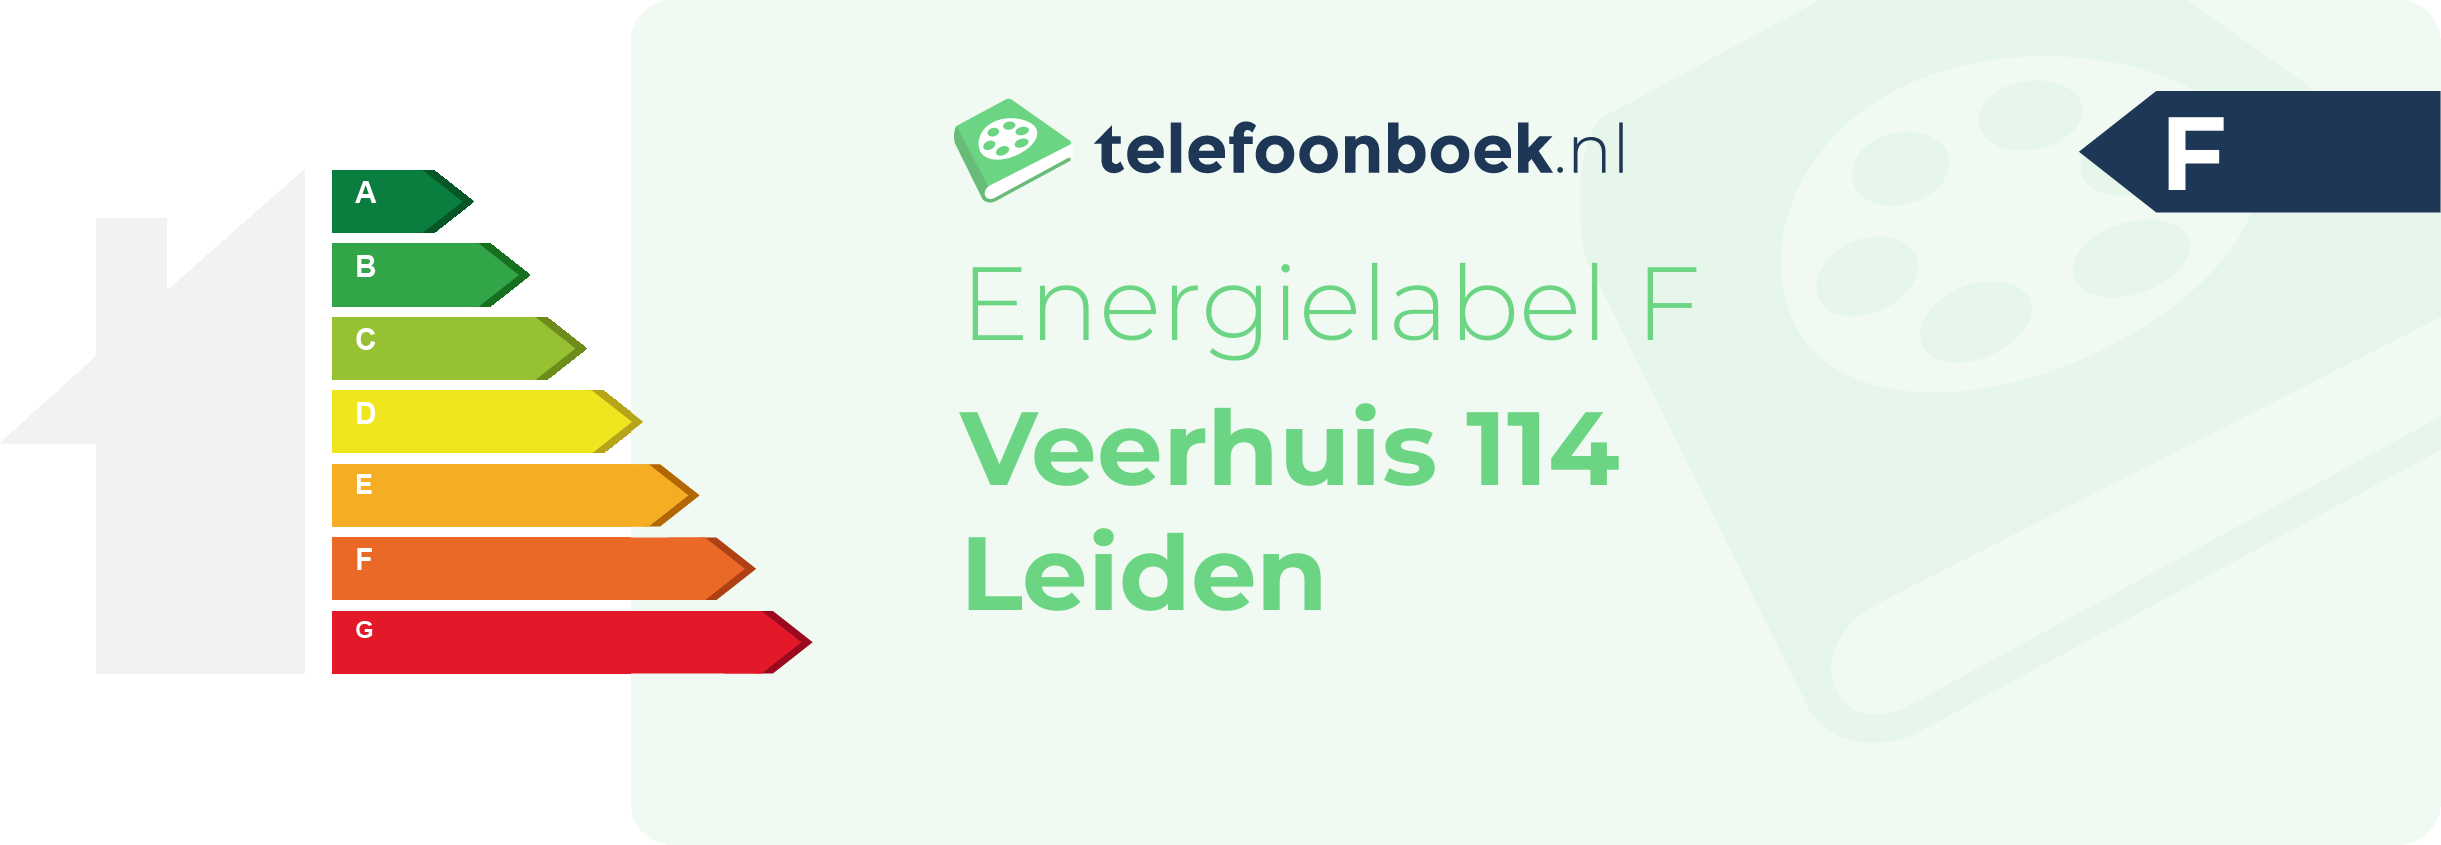 Energielabel Veerhuis 114 Leiden